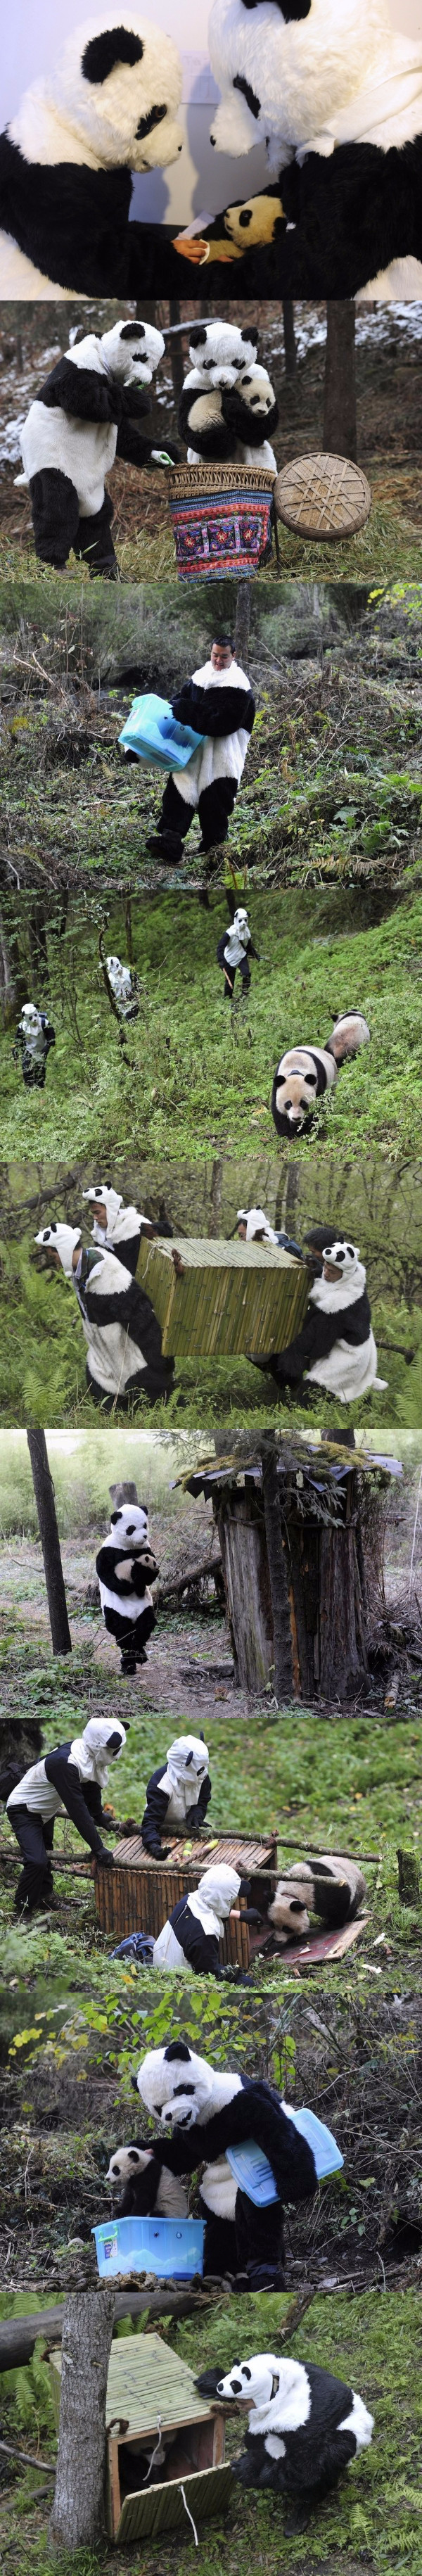 Як виховують маленьких панд в зоопарках (фото)